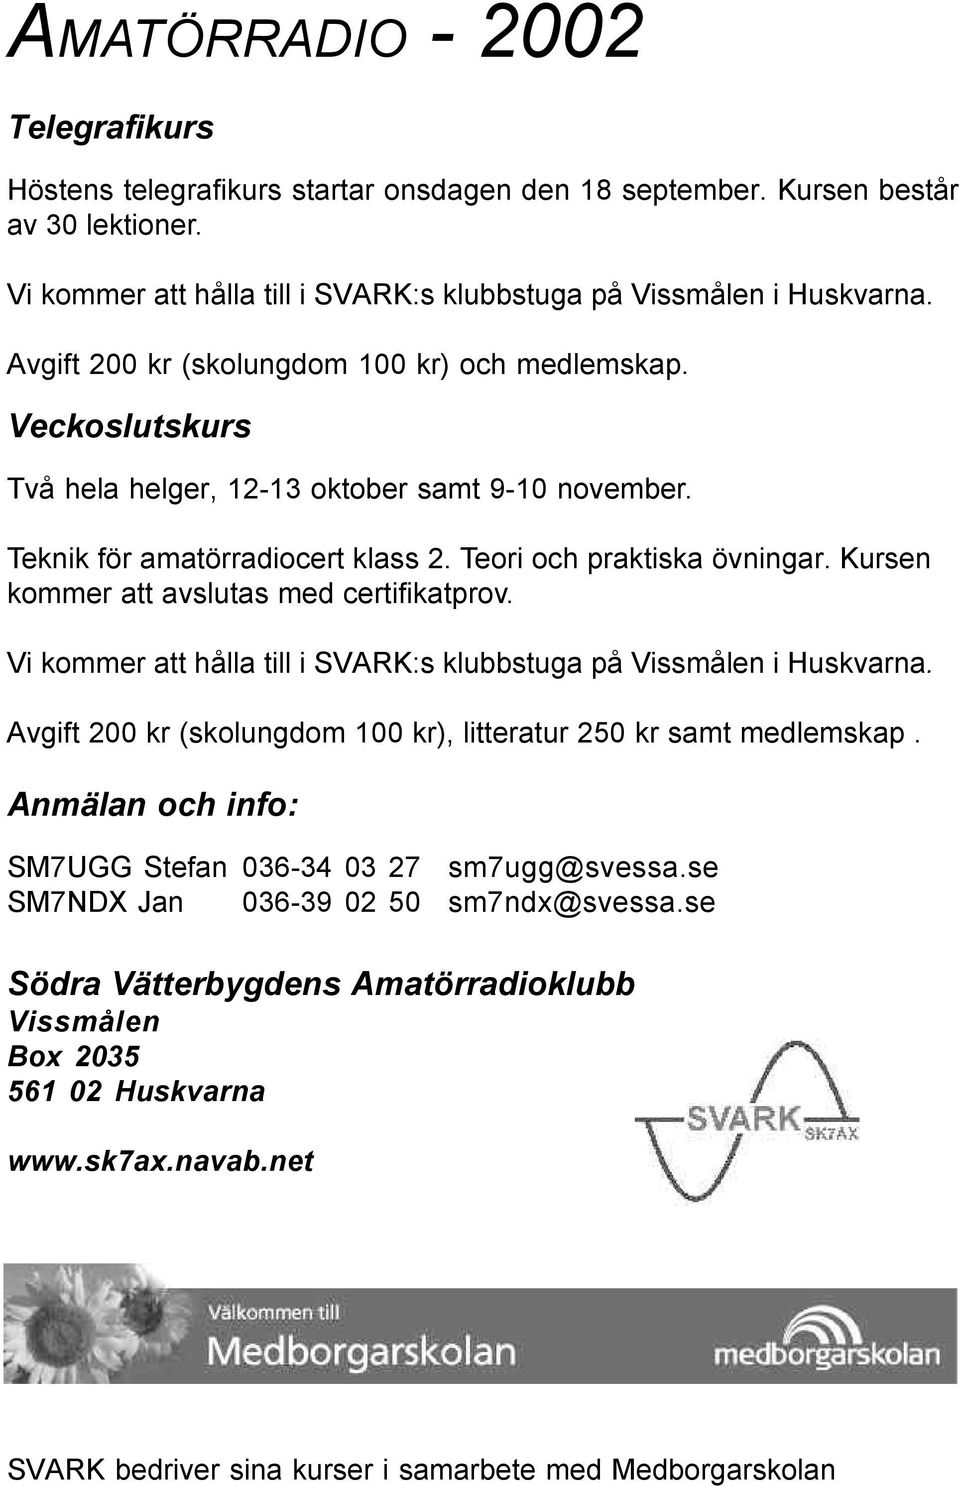 Kursen kommer att avslutas med certifikatprov. Vi kommer att hålla till i SVARK:s klubbstuga på Vissmålen i Huskvarna. Avgift 200 kr (skolungdom 100 kr), litteratur 250 kr samt medlemskap.